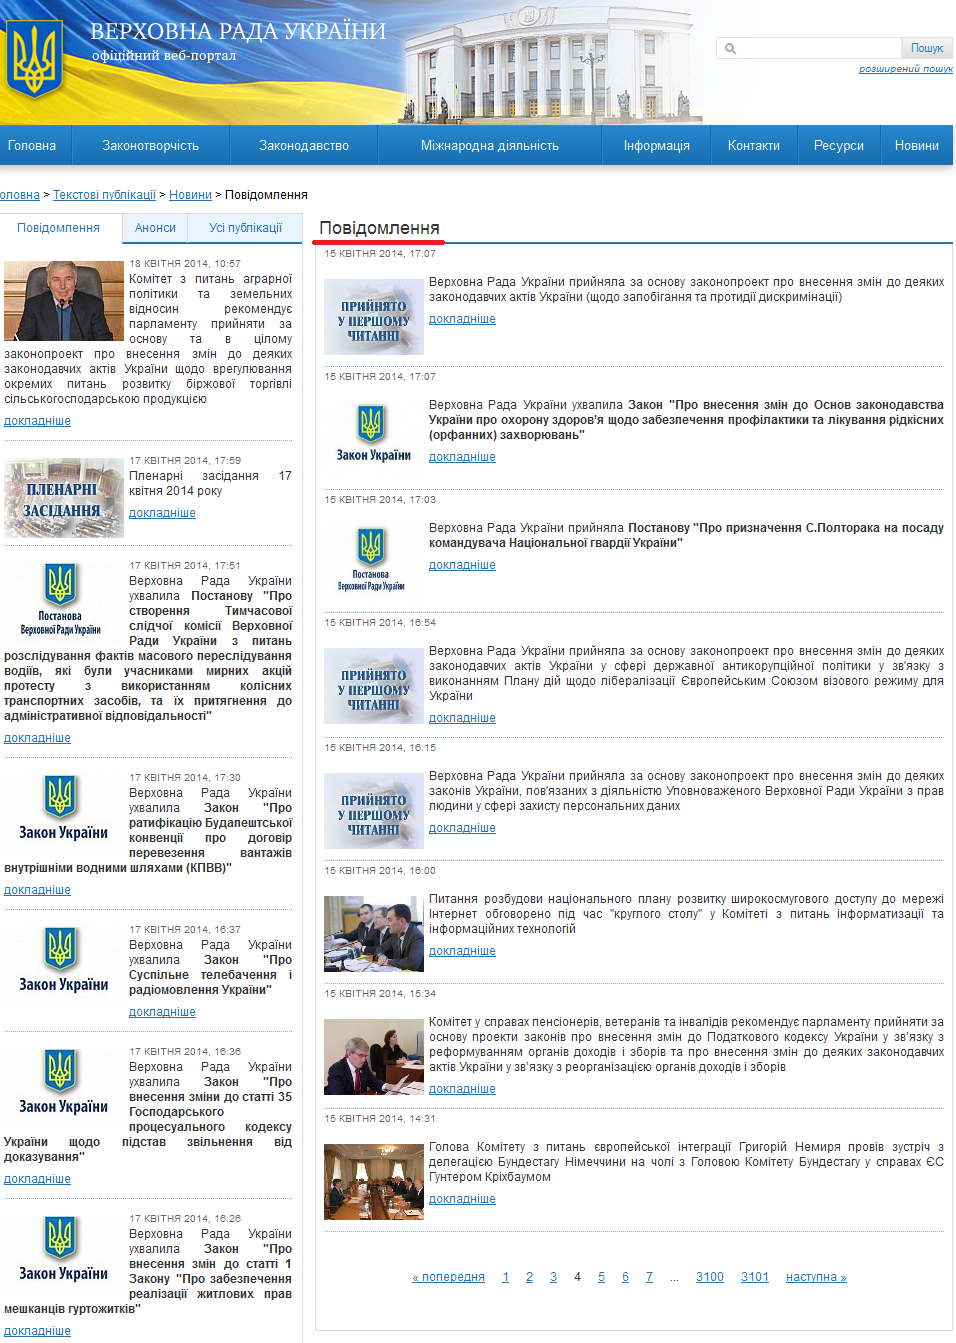 http://iportal.rada.gov.ua/news/Novyny/Povidomlennya/page/4